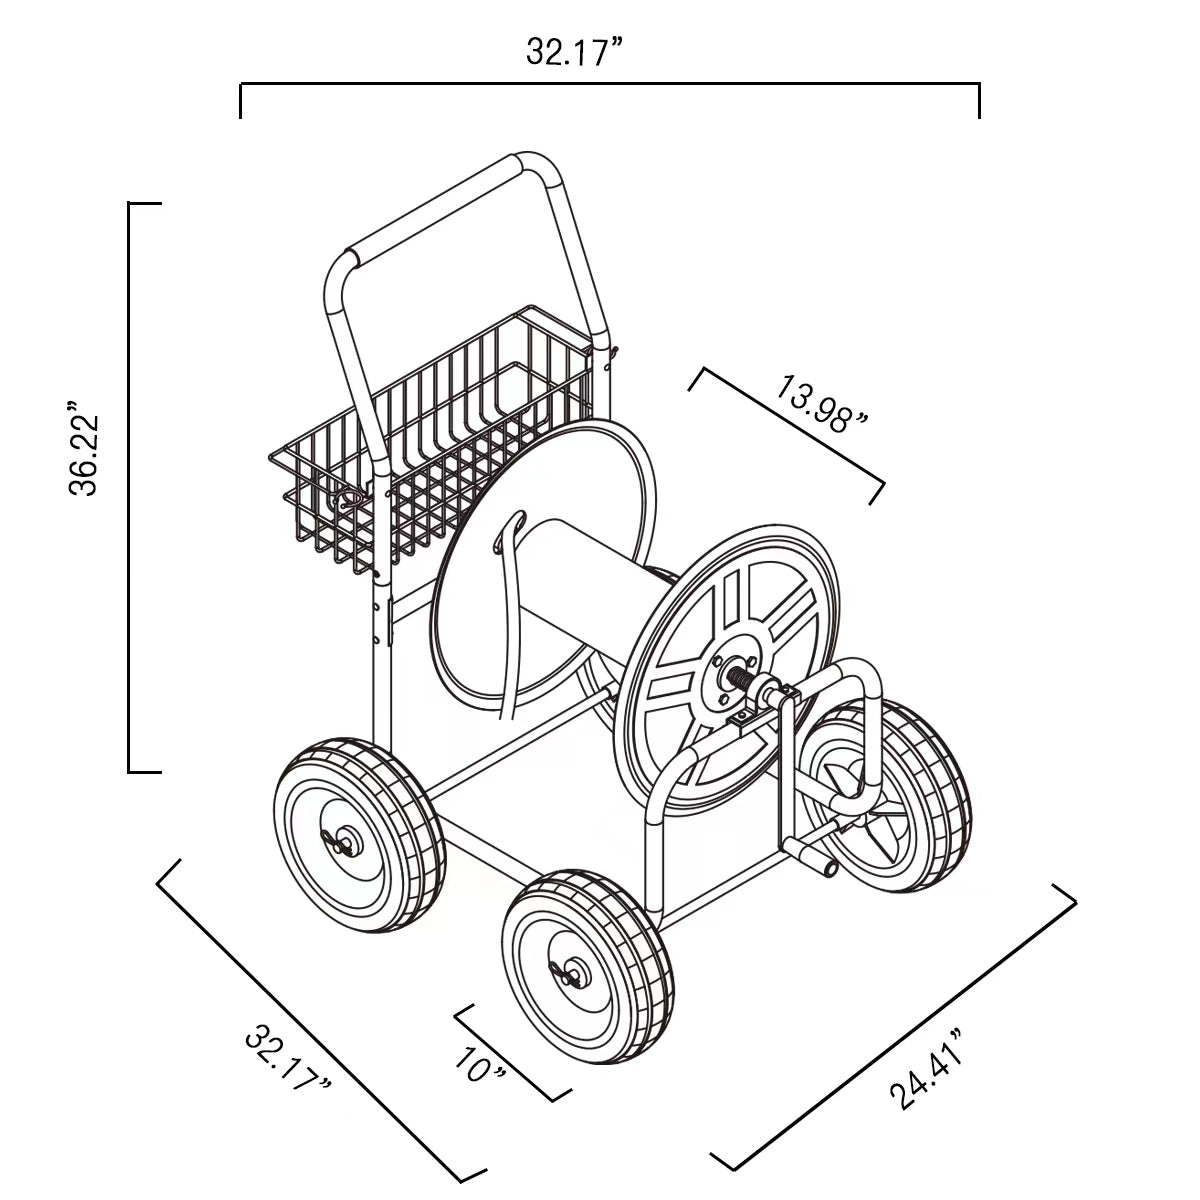 Liberty Garden 4-Wheel Hose Cart